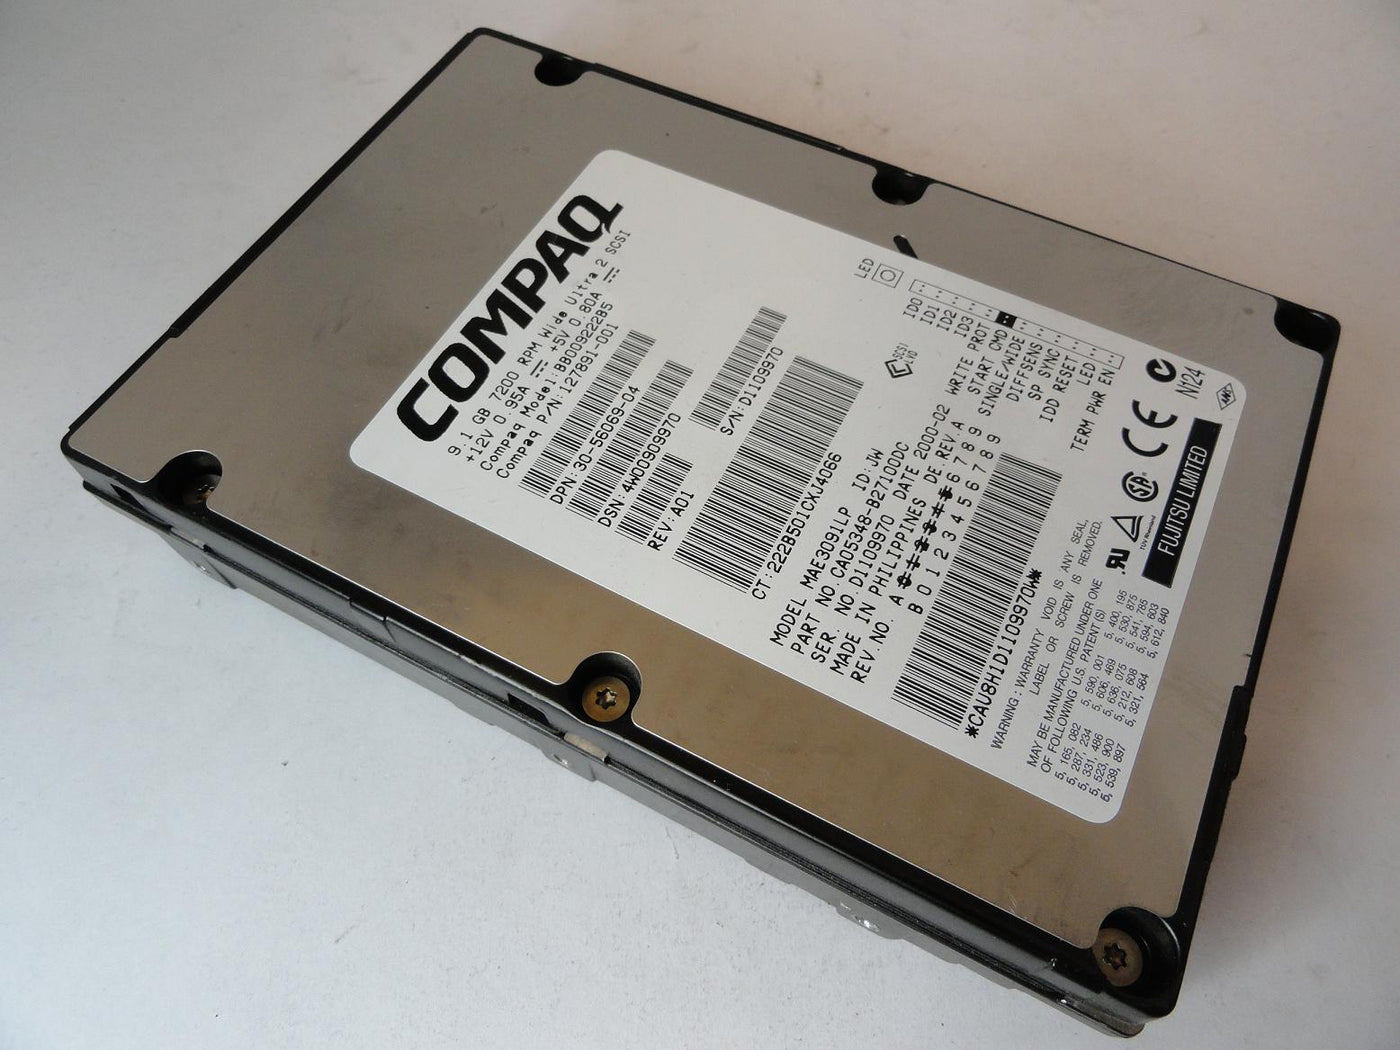 CA05348-B27100DC - Fujitsu Compaq 9.1GB SCSI 68 Pin 7200rpm 3.5in HDD - Refurbished